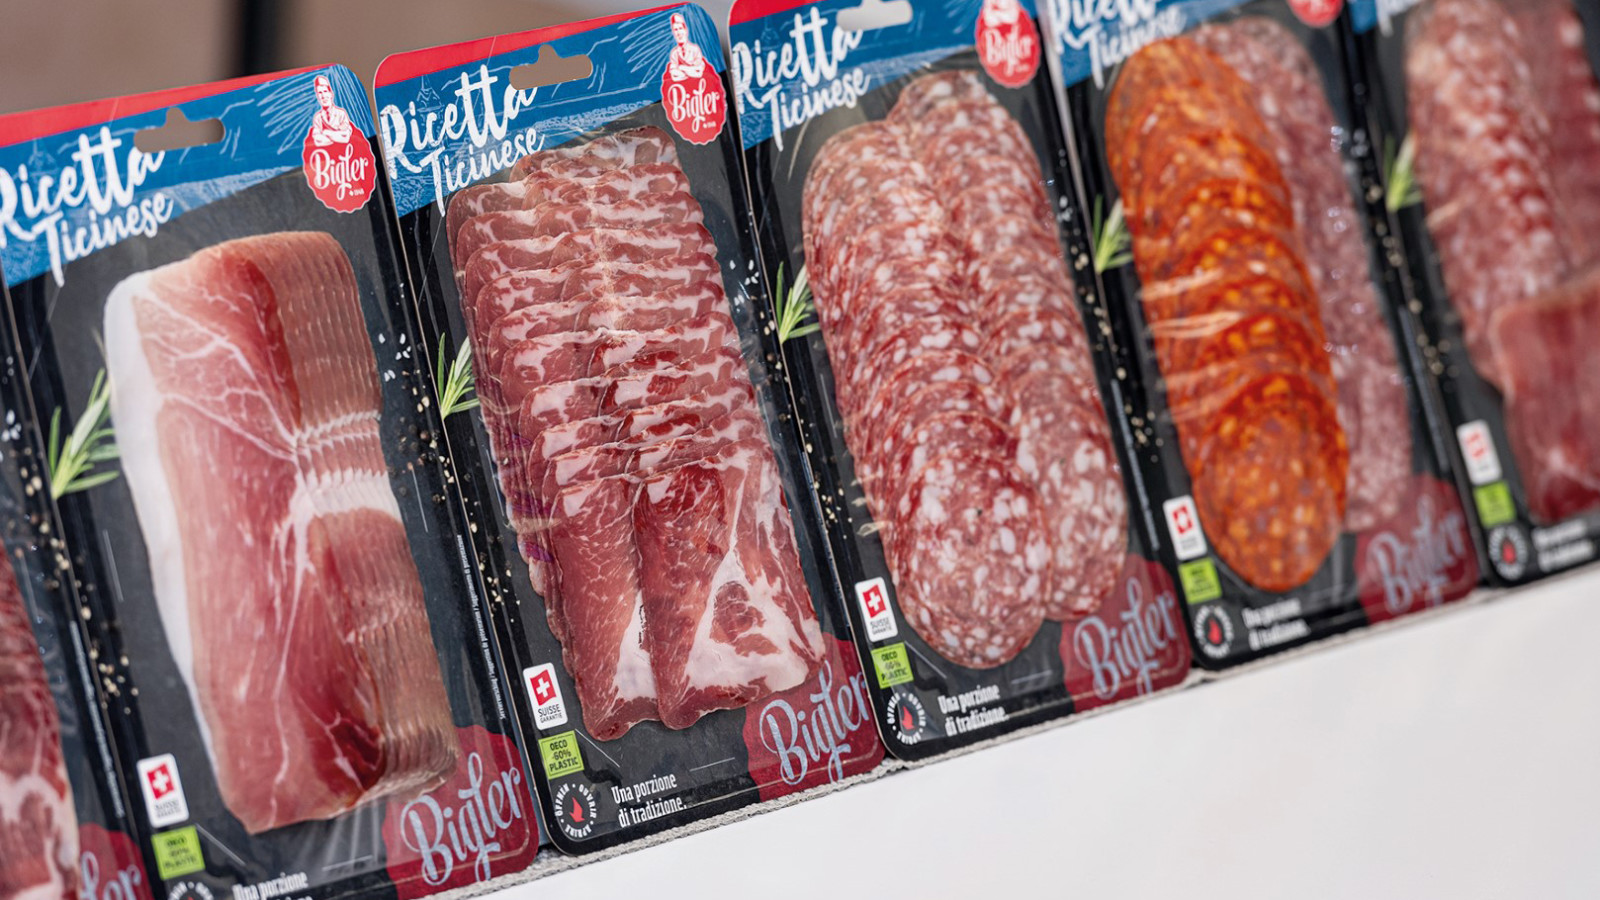 FlatMap fra Nemco er den perfekte løsning til at fremhæve produktet i køledisken. Vi har et bredt udvalg af kød emballage til f.eks. pølser, kød og salami, hvoraf flere af vores skin pack produkter er genanvendelige eller plastreduceret.